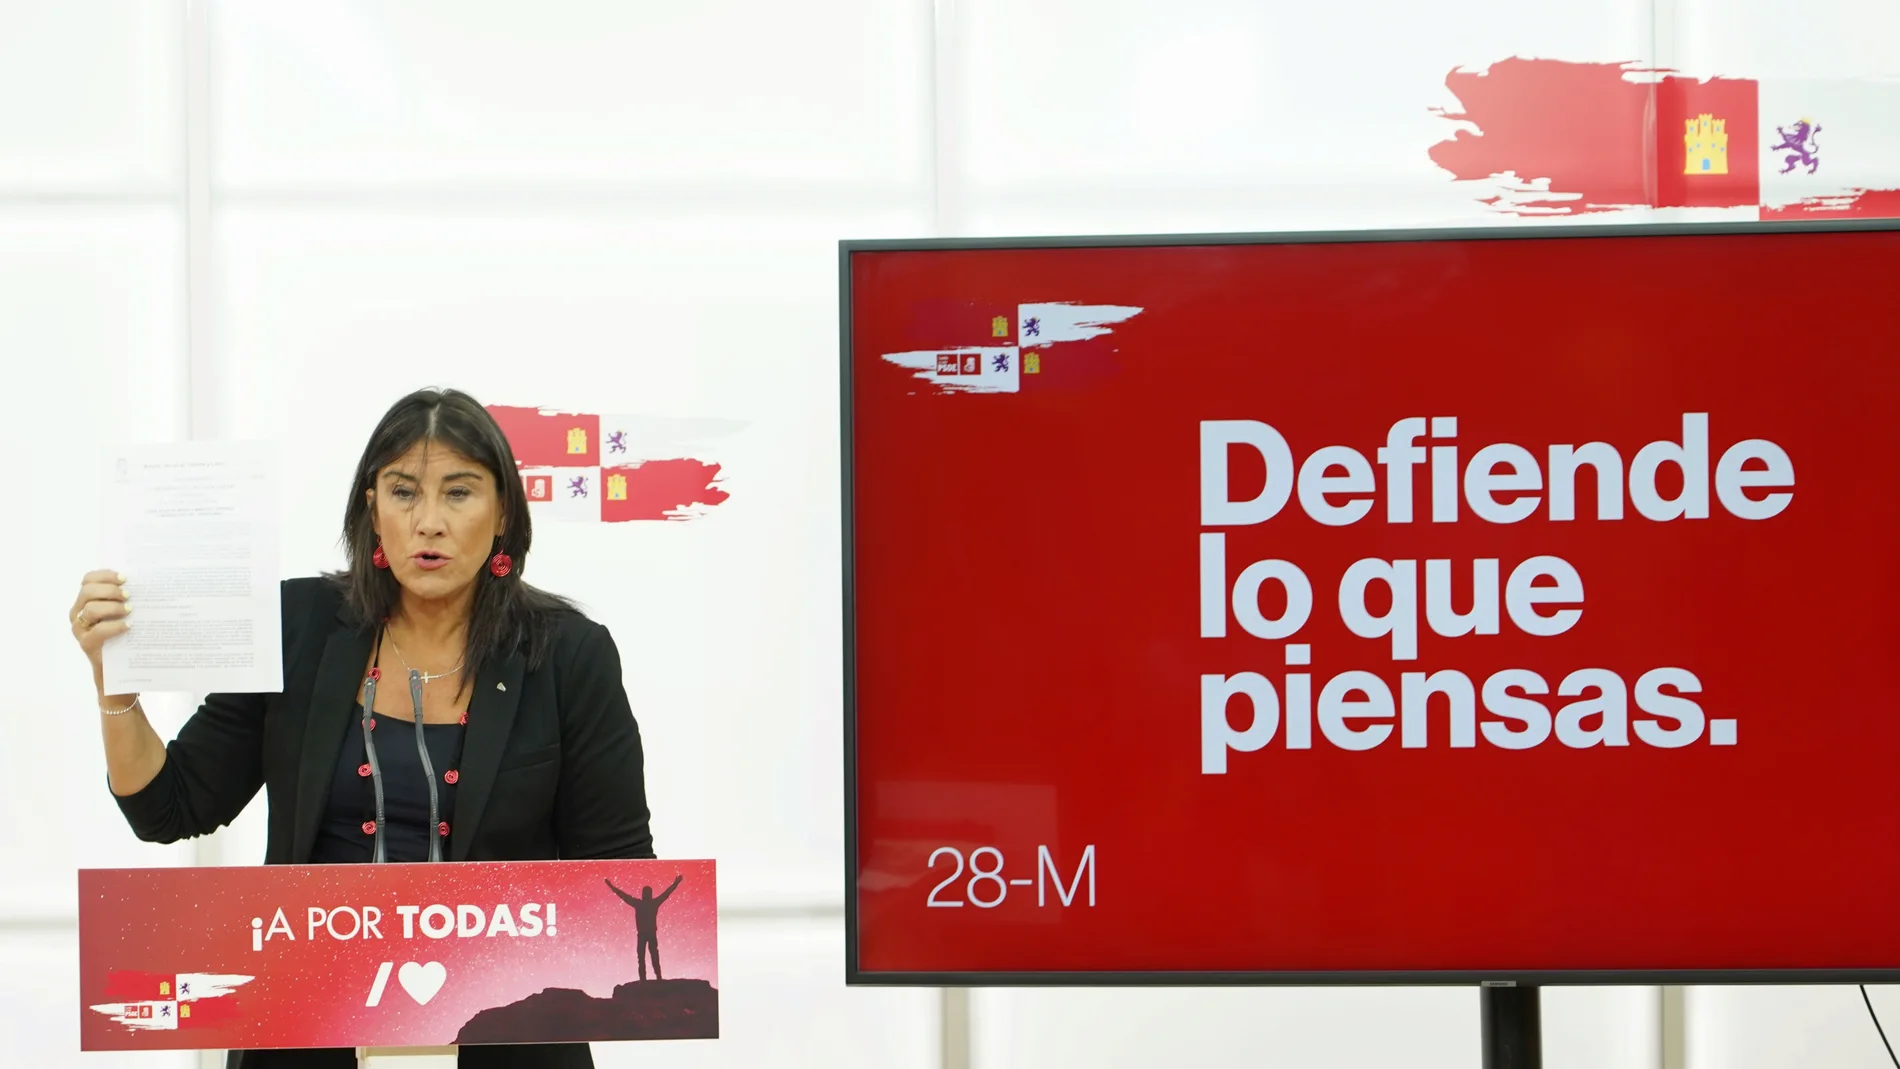 La secretaria de organización del PSOE de Castilla y León, Ana Sánchez, presenta la campaña del 28-M